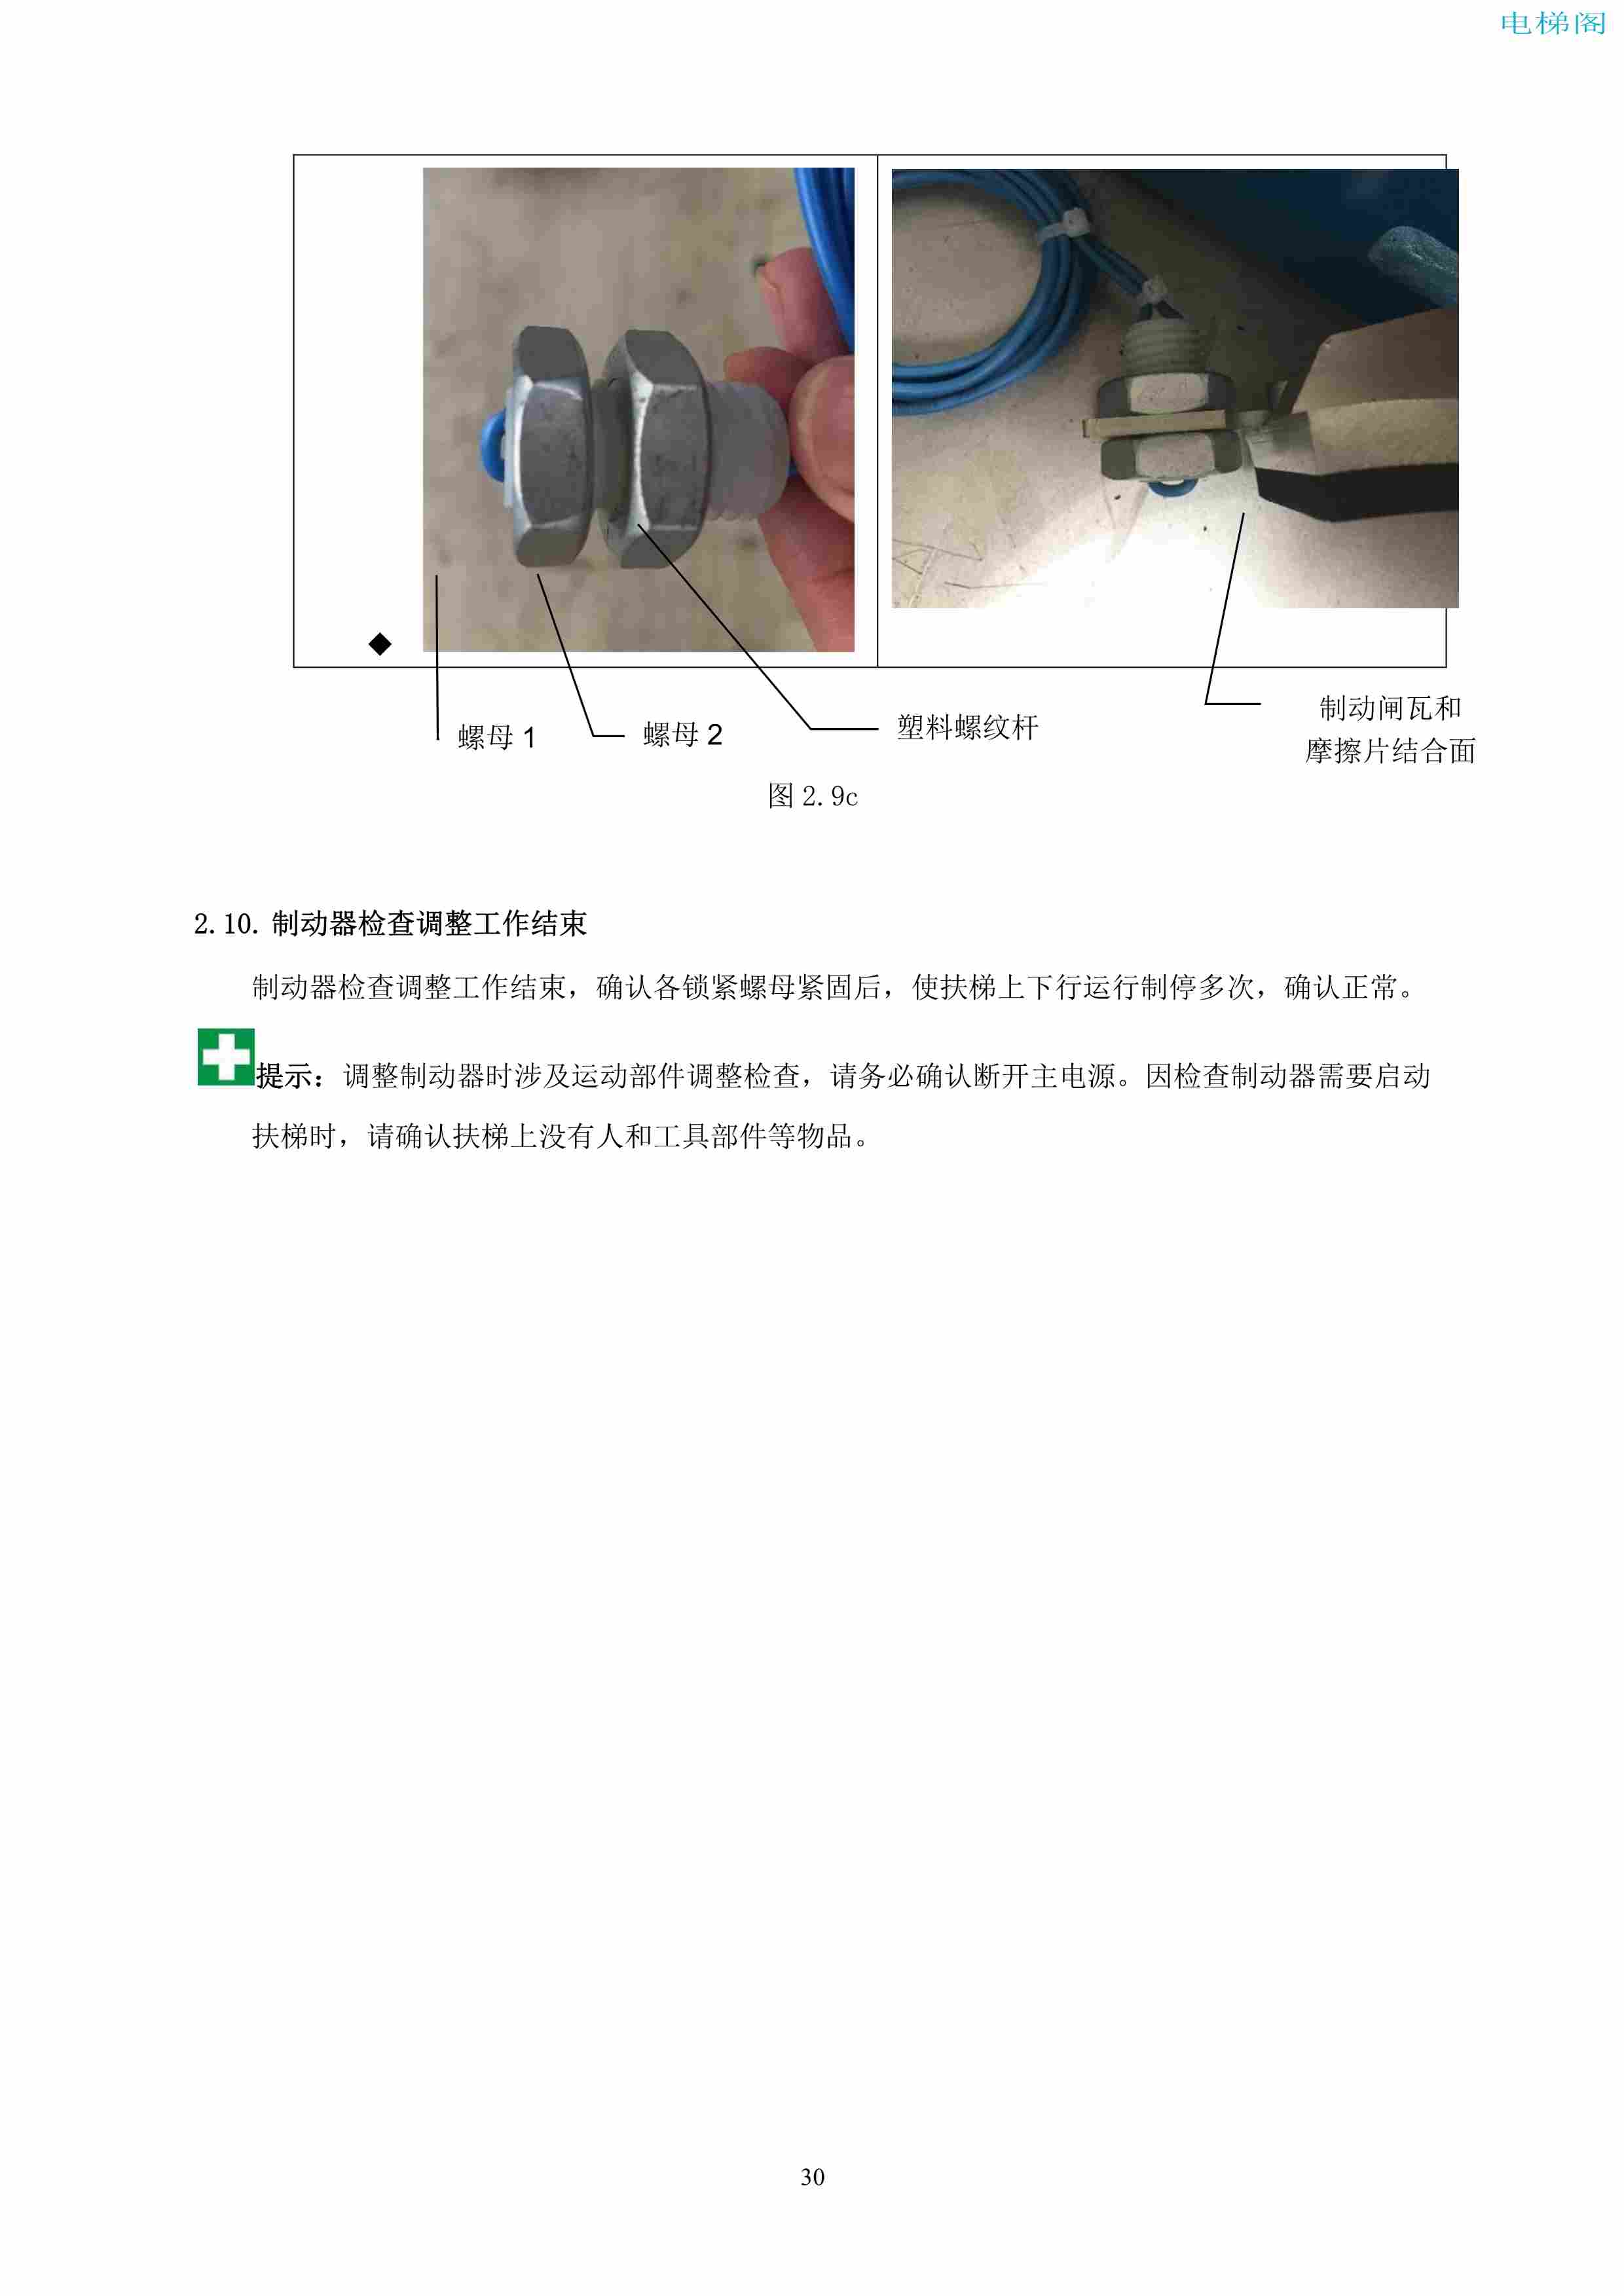 上海三菱电梯有限公司自动扶梯制动器维护作业要领汇编_31.jpg